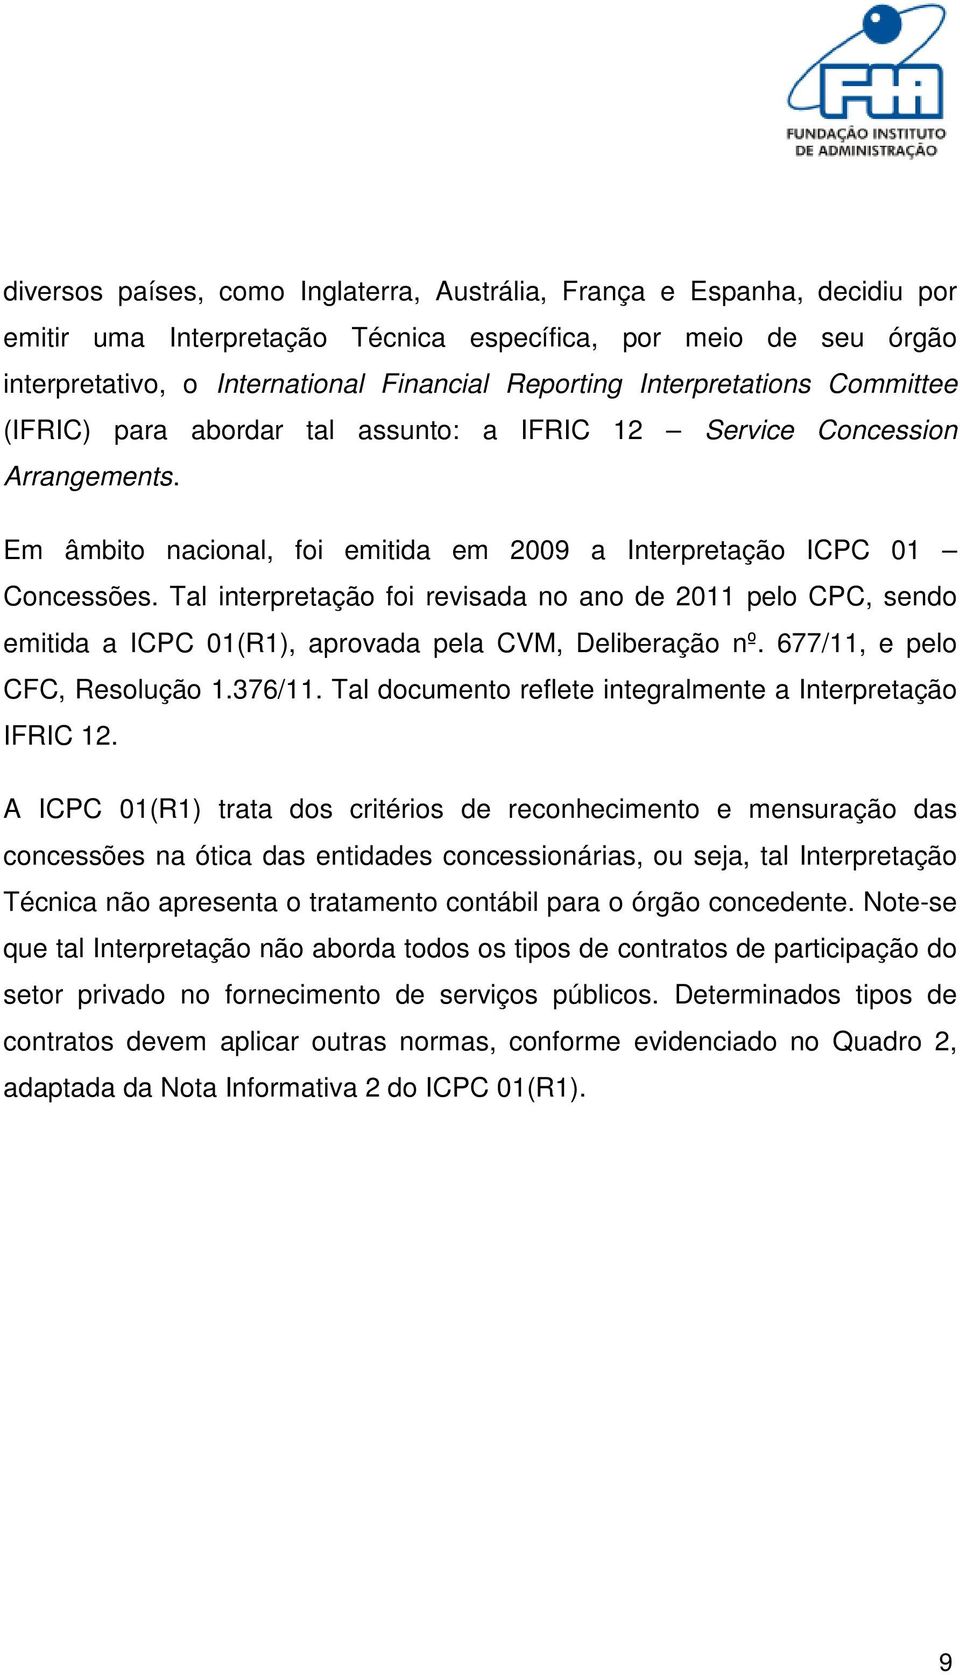 Tal interpretação foi revisada no ano de 2011 pelo CPC, sendo emitida a ICPC 01(R1), aprovada pela CVM, Deliberação nº. 677/11, e pelo CFC, Resolução 1.376/11.